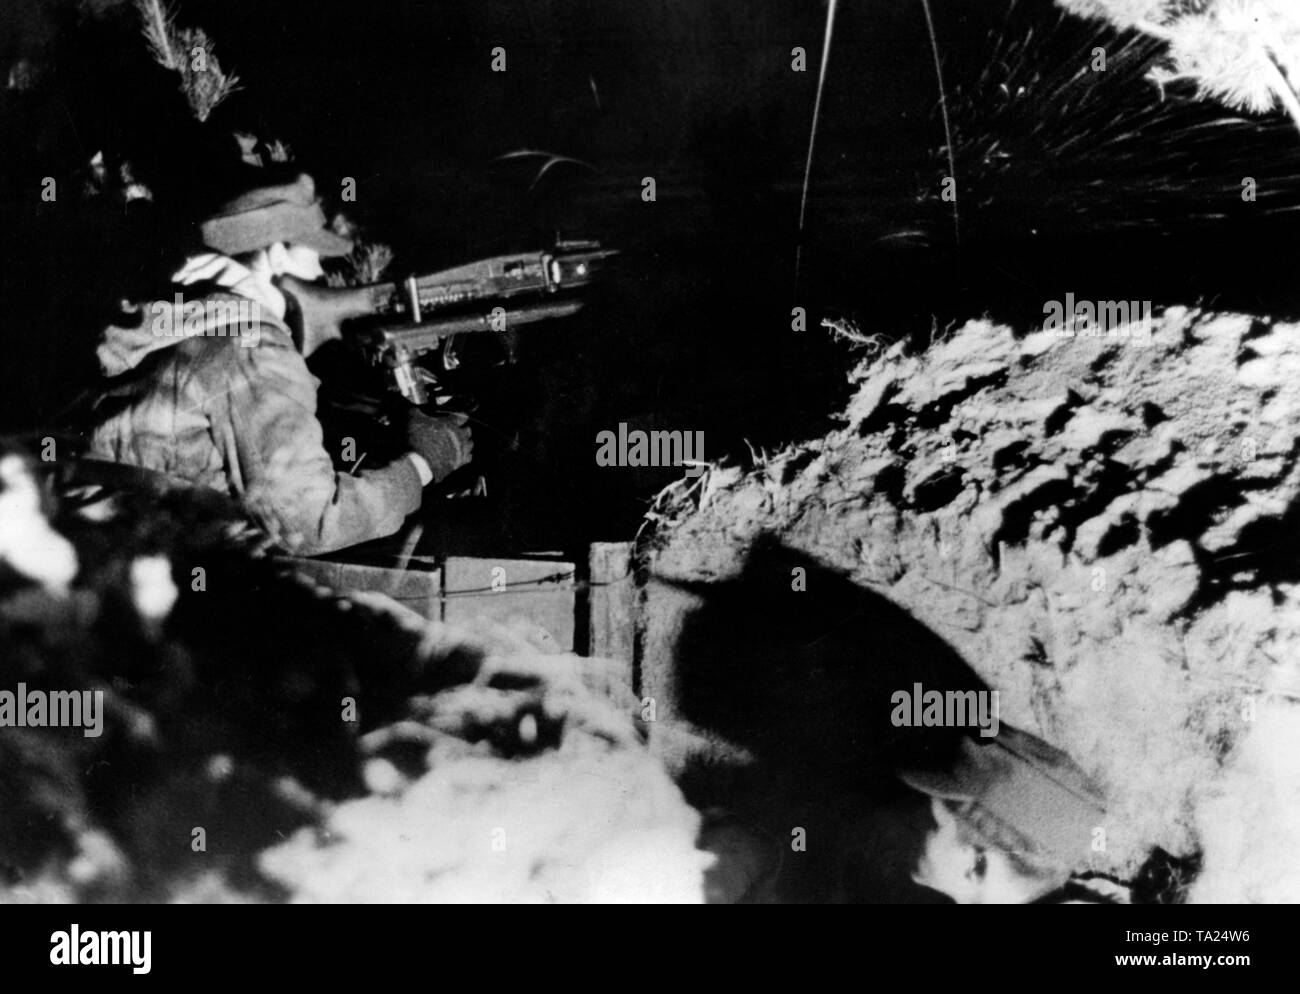 Un soldat monte la garde sur une MG 42 montée sur un affût de canon à un poste de l'Prinsk Marais. Il porte un uniforme de camouflage. Photo : correspondant de guerre Etzold Banque D'Images